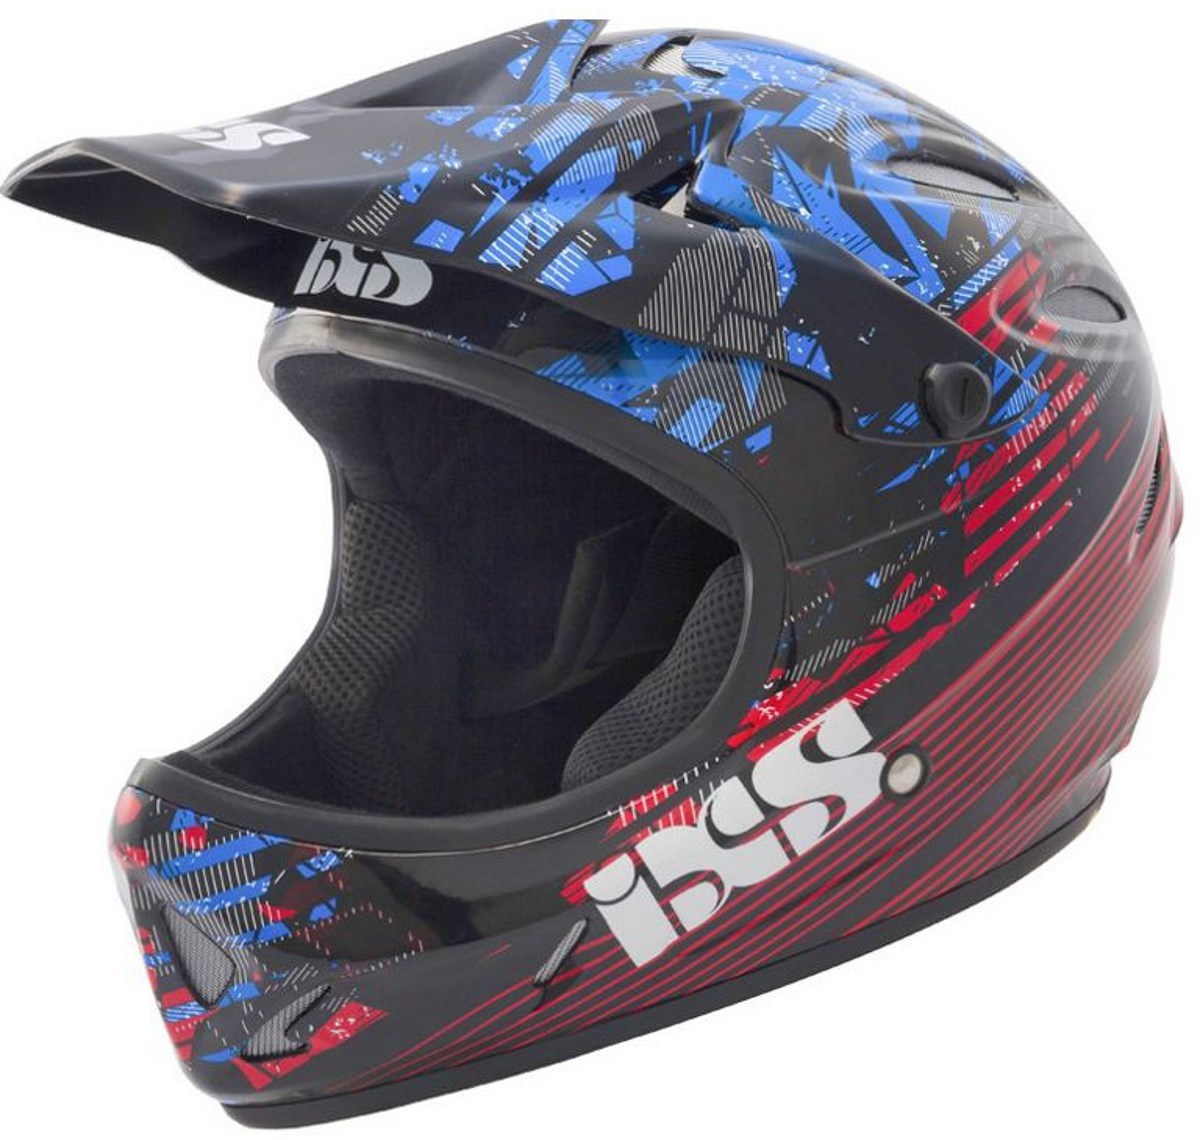 IXS Phobos Velvet Full Face Helmet 2014 product image